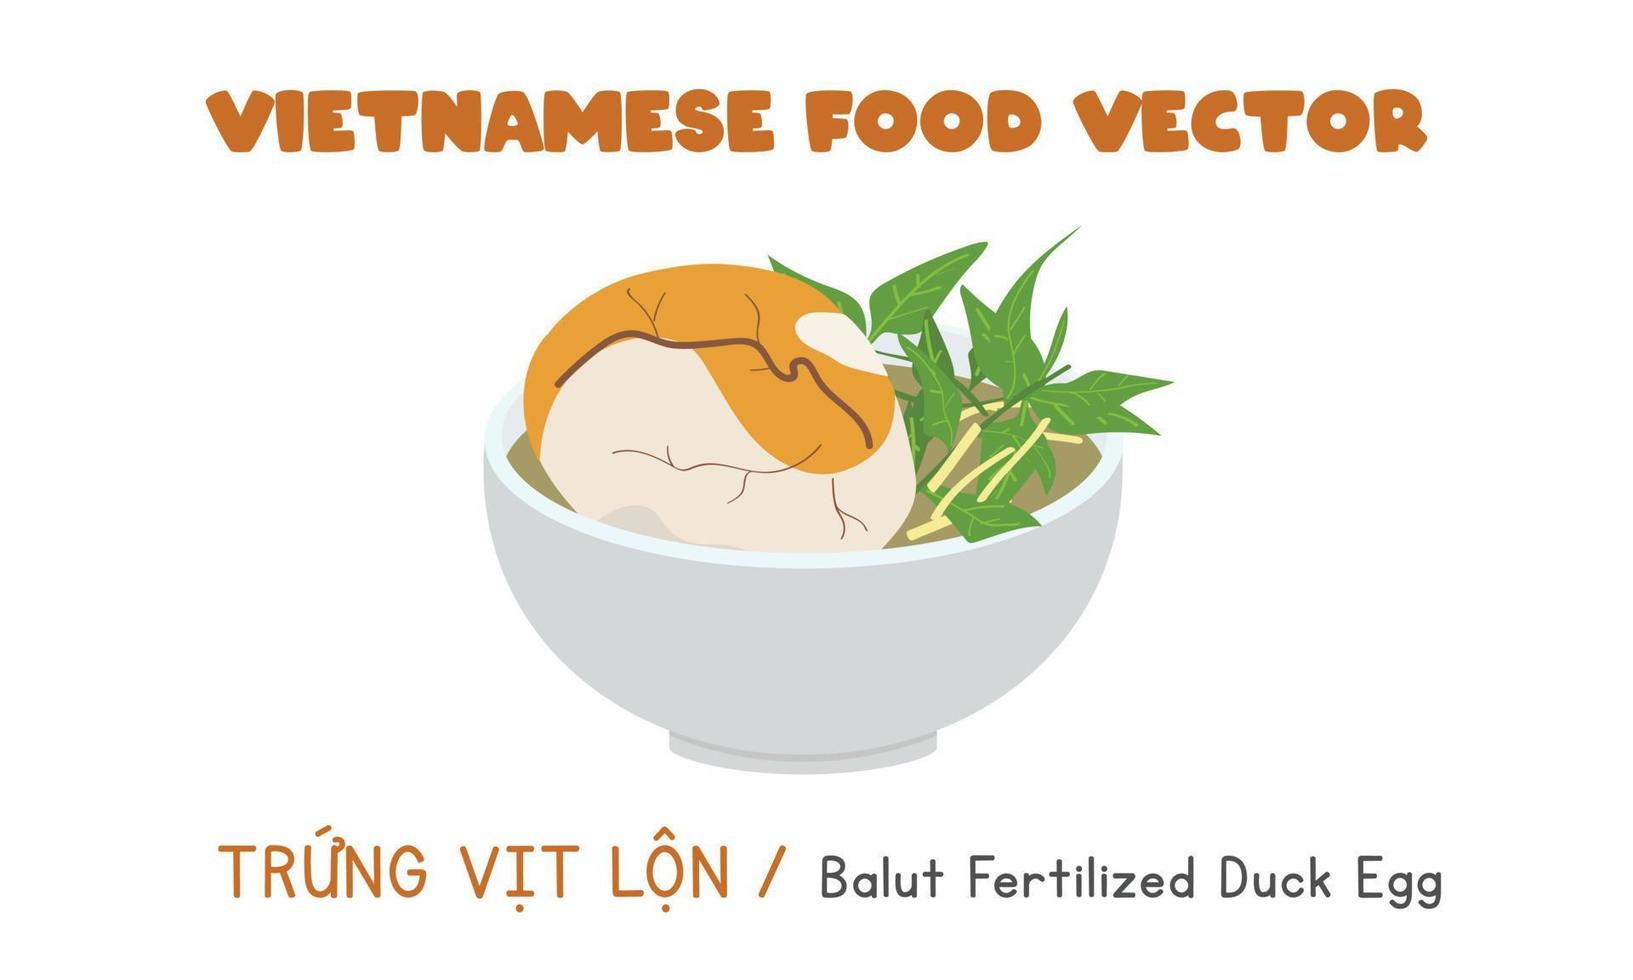 Vietnamese balut fertilized duck egg flat vector. Trung Vit Lon clipart cartoon. Asian food. Vietnamese cuisine. Vietnamese exotic food vector design